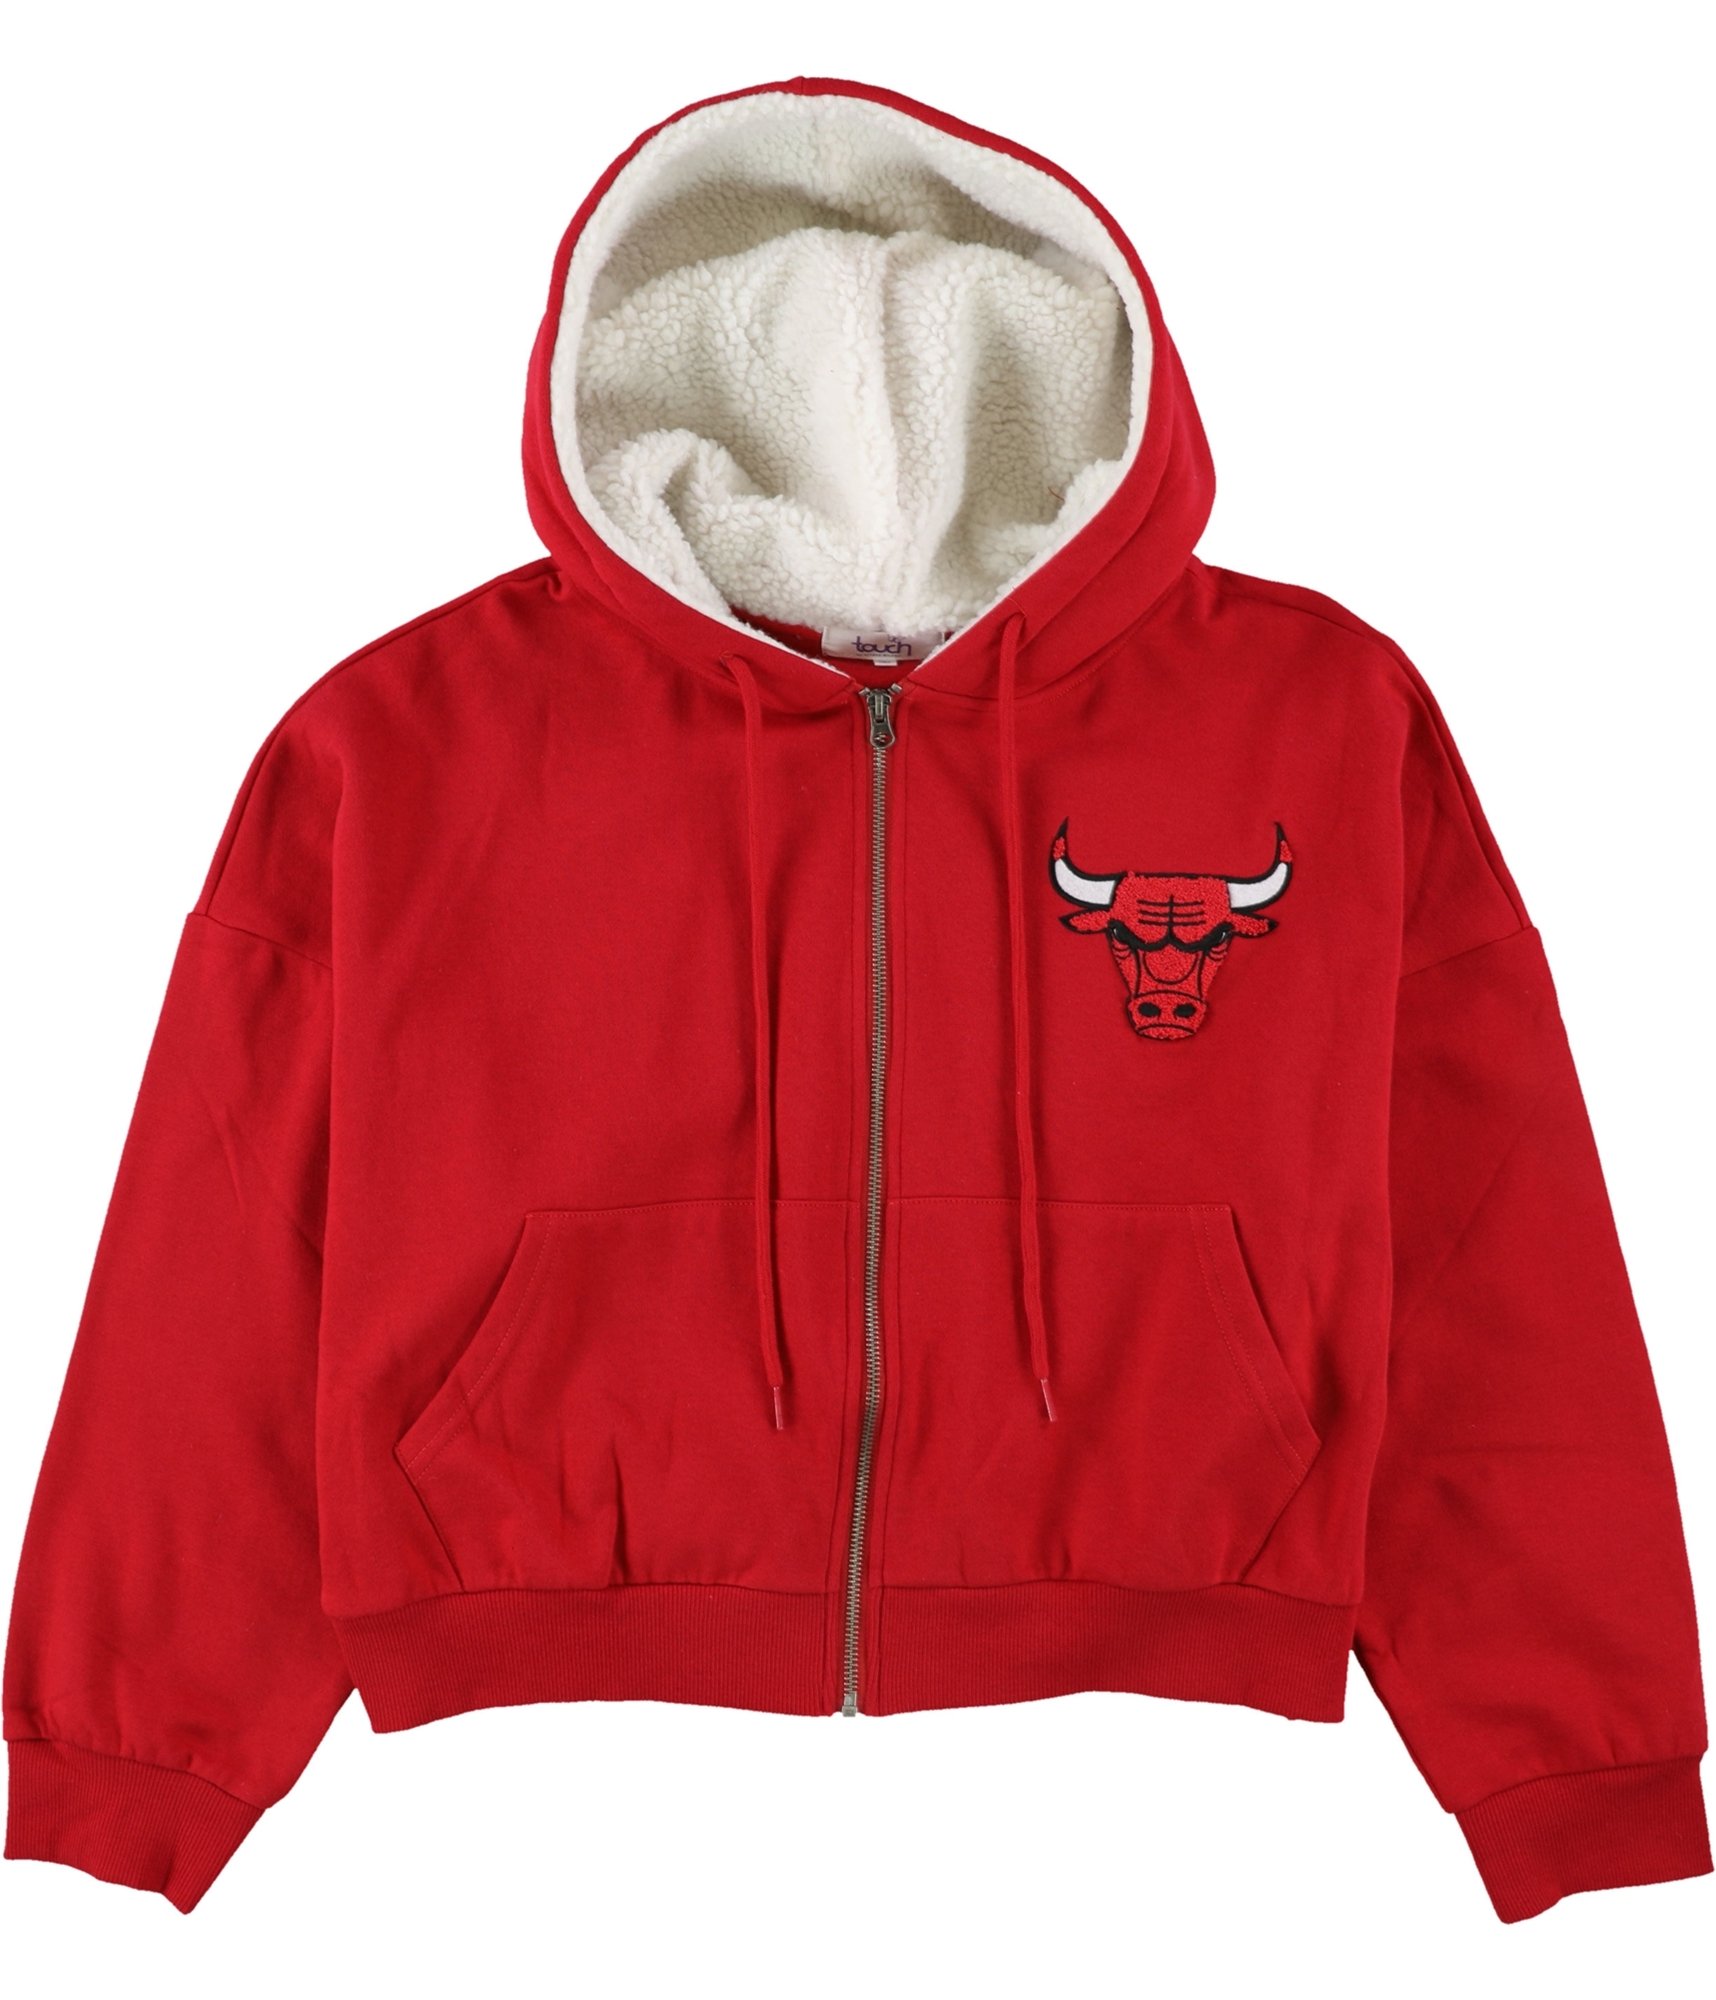 Touch Womens Chicago Bulls Hoodie Sweatshirt, Red, Medium